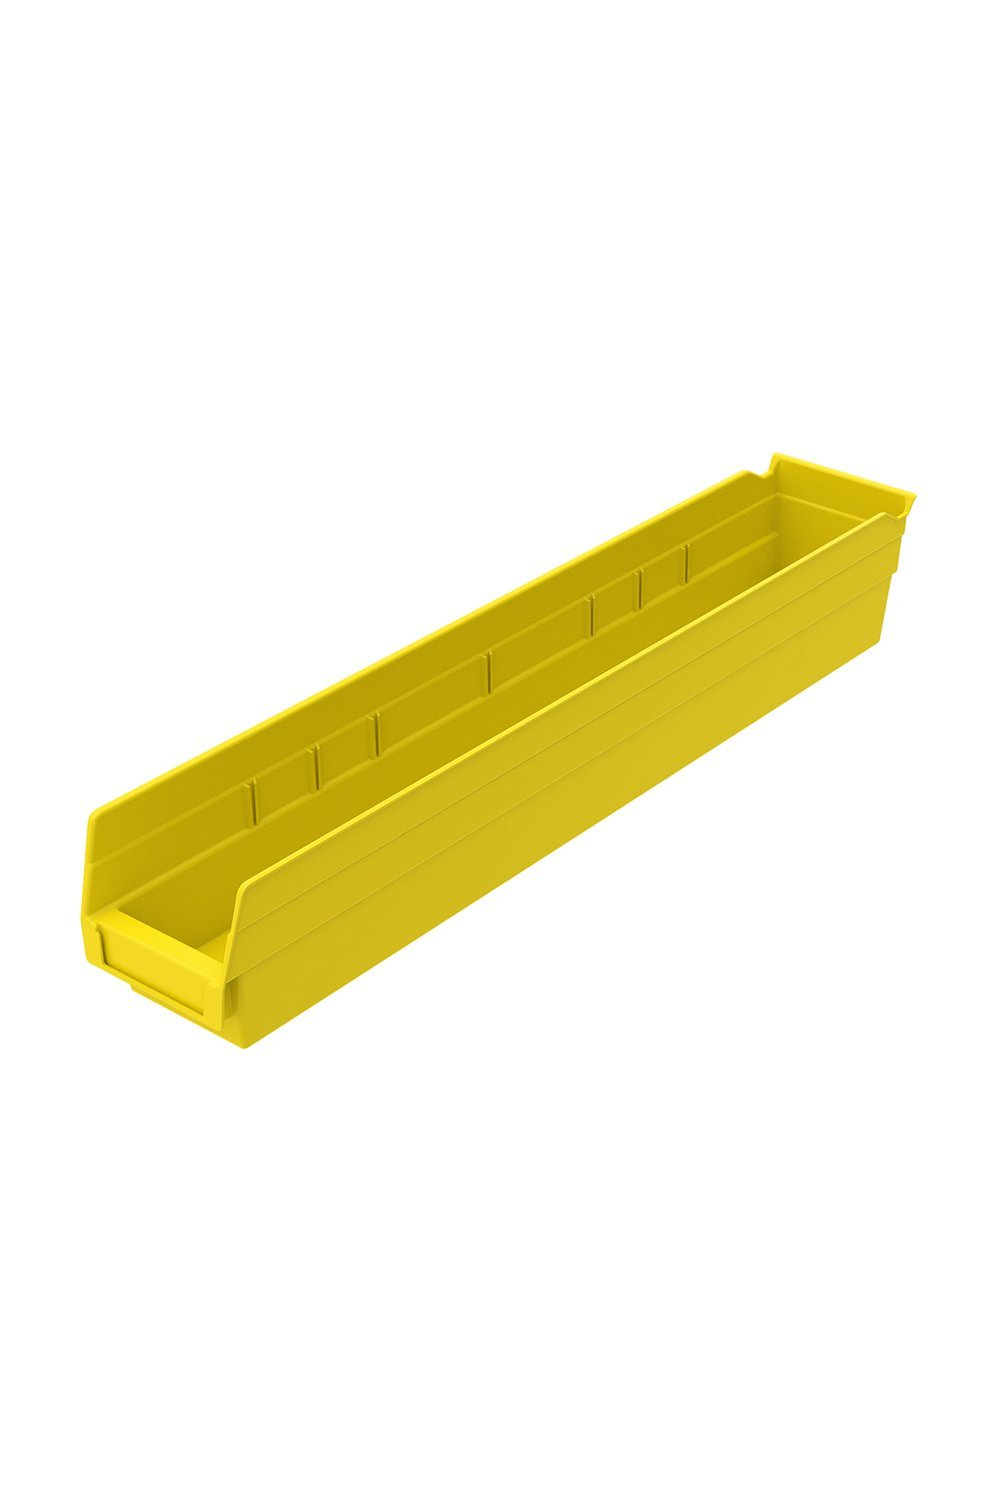 Shelf Bin for 24"D Shelves Bins & Containers Acart 23-5/8'' x 4-1/8'' x 4'' Yellow 